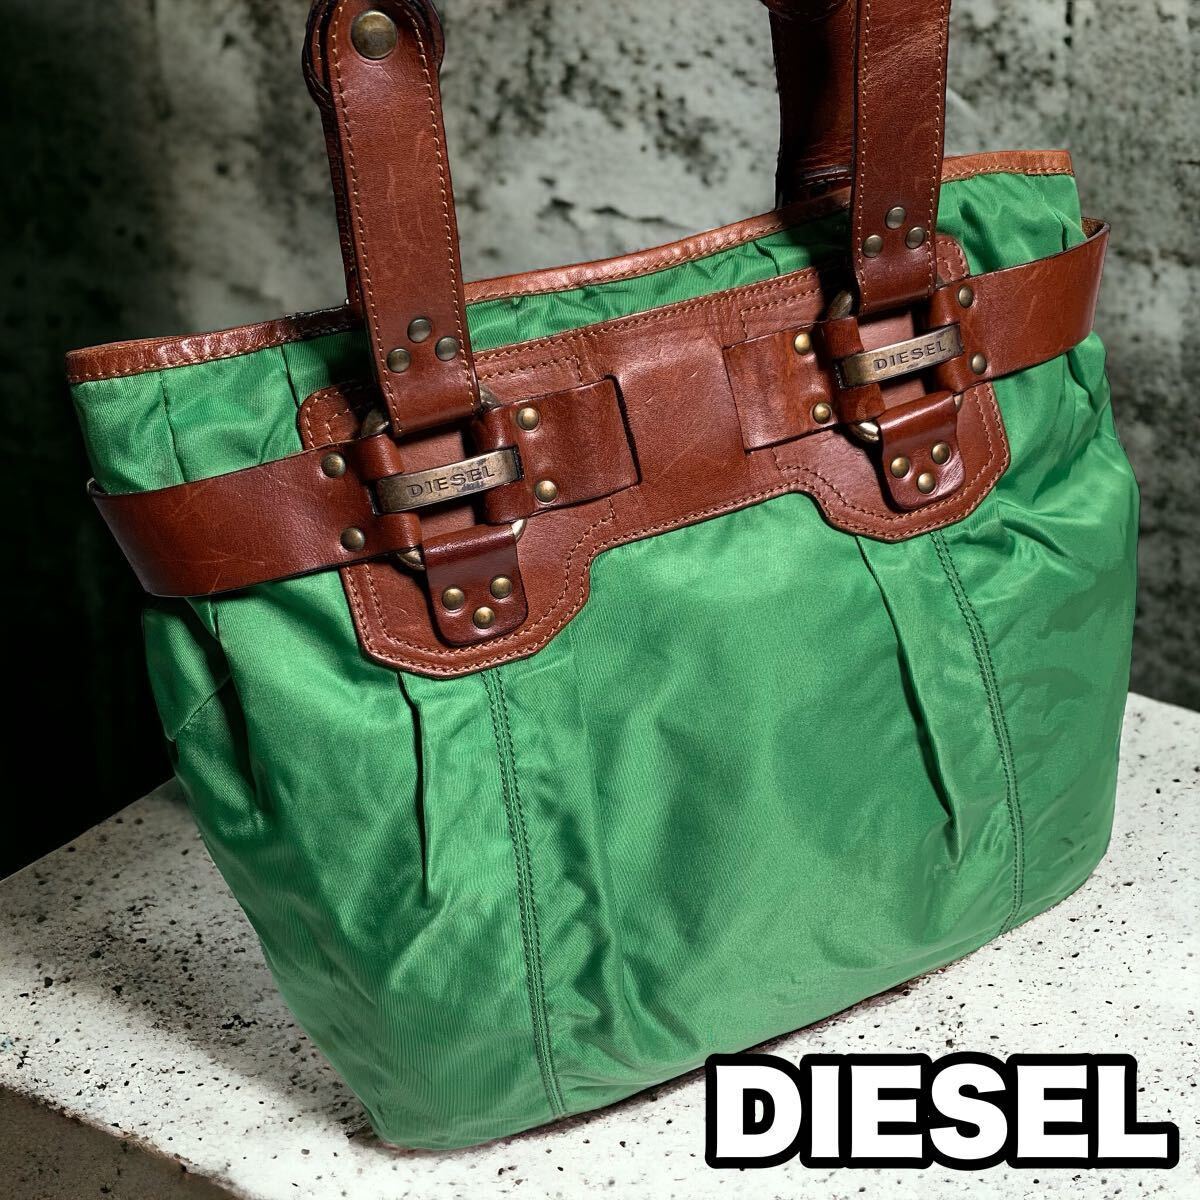 DIESEL イタリア製 グリーン ナイロン レザー トートバッグ 肩掛け可能 A4収納可能_画像1